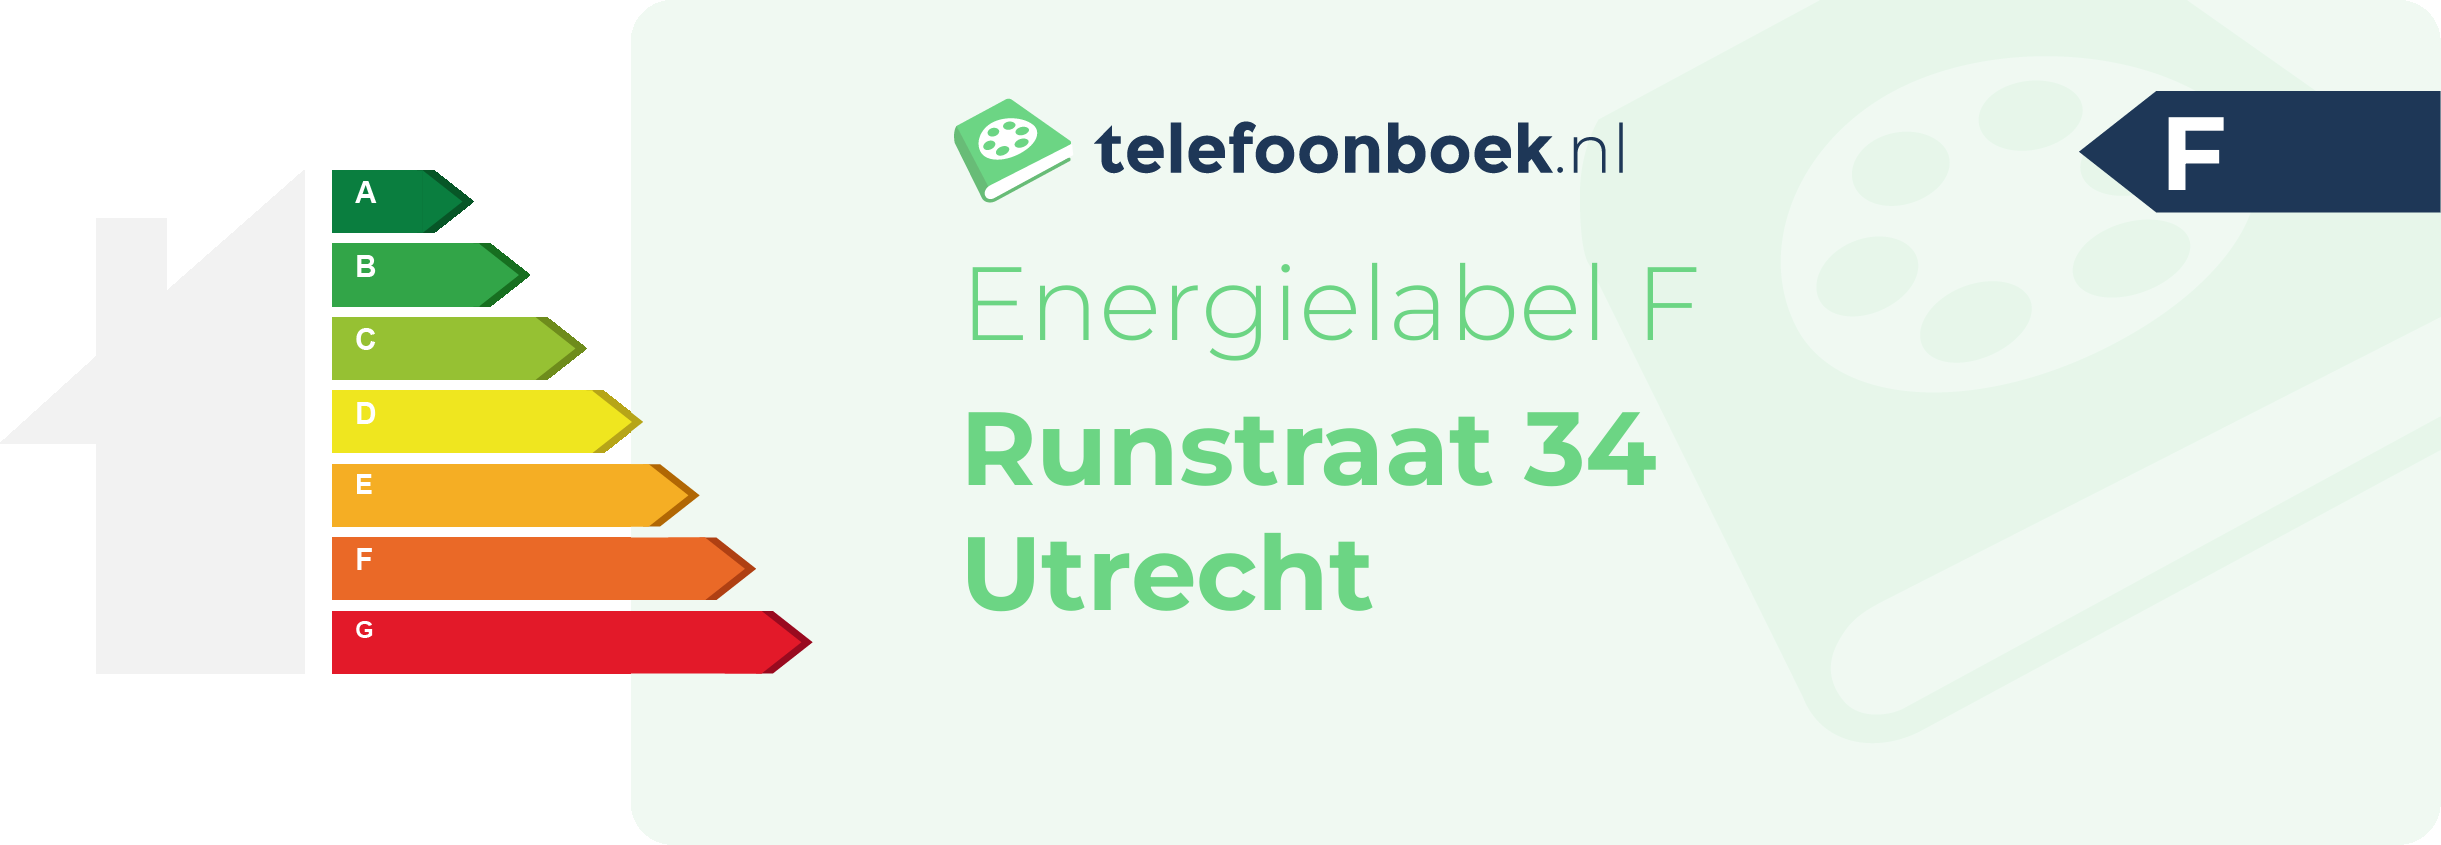 Energielabel Runstraat 34 Utrecht